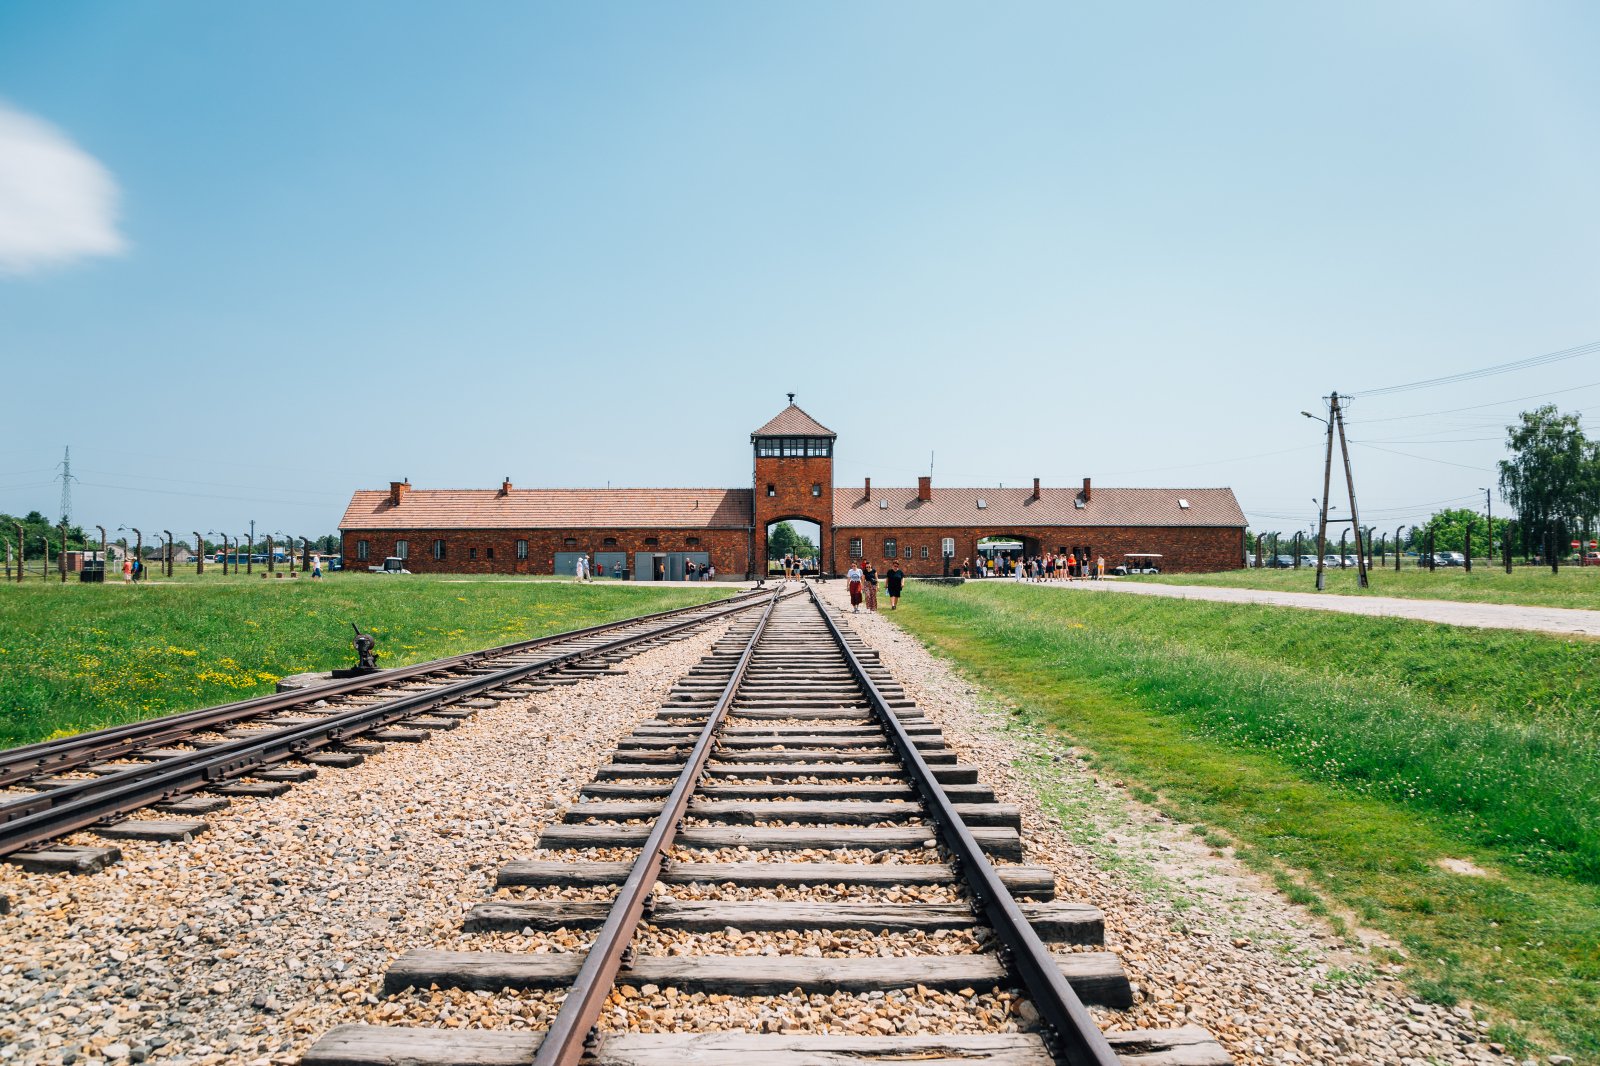 Oświęcim, koncentrační tábor, památník – Sanga Park  / Shutterstock